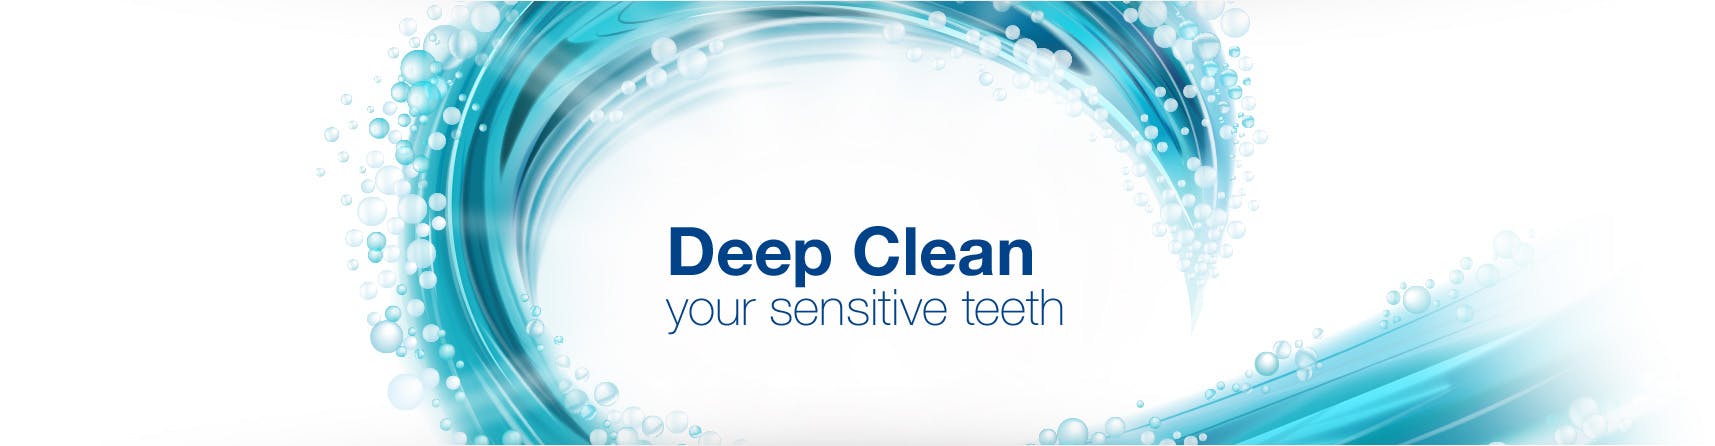 Deepclean your sensitive teeth imagery